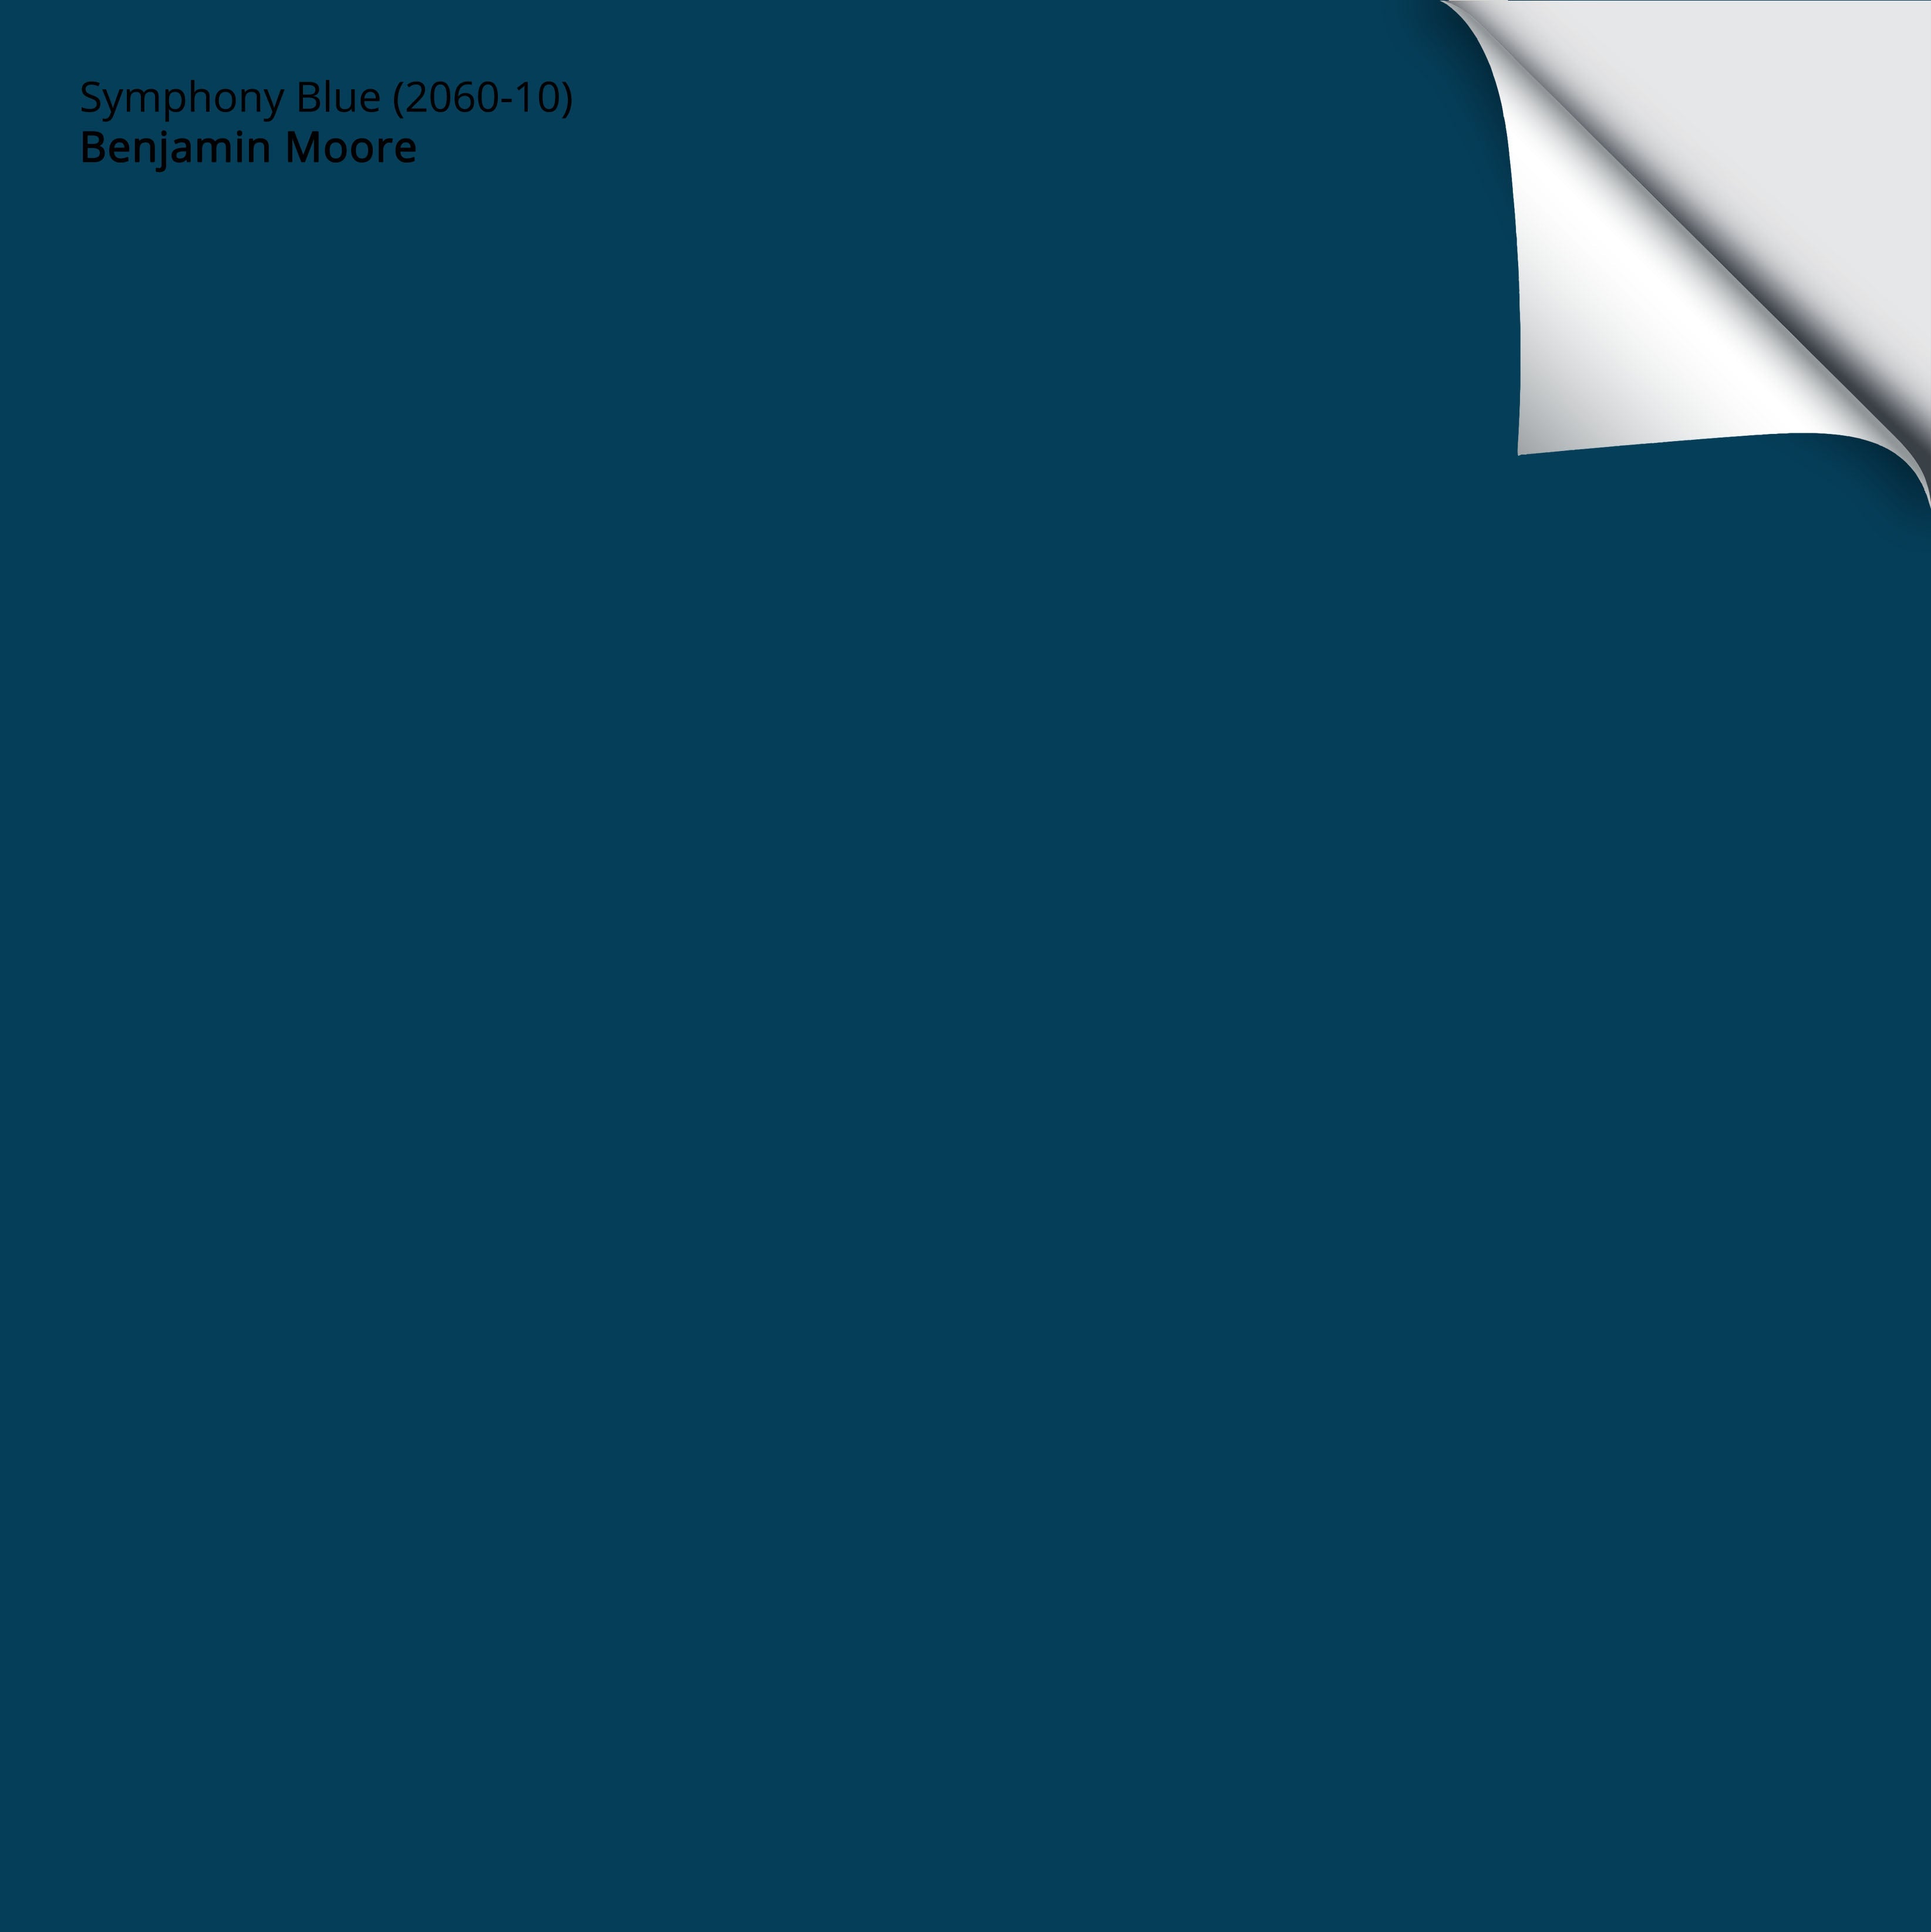 Symphony Blue (2060-10): 9x14.75 – Benjamin Moore x Samplize